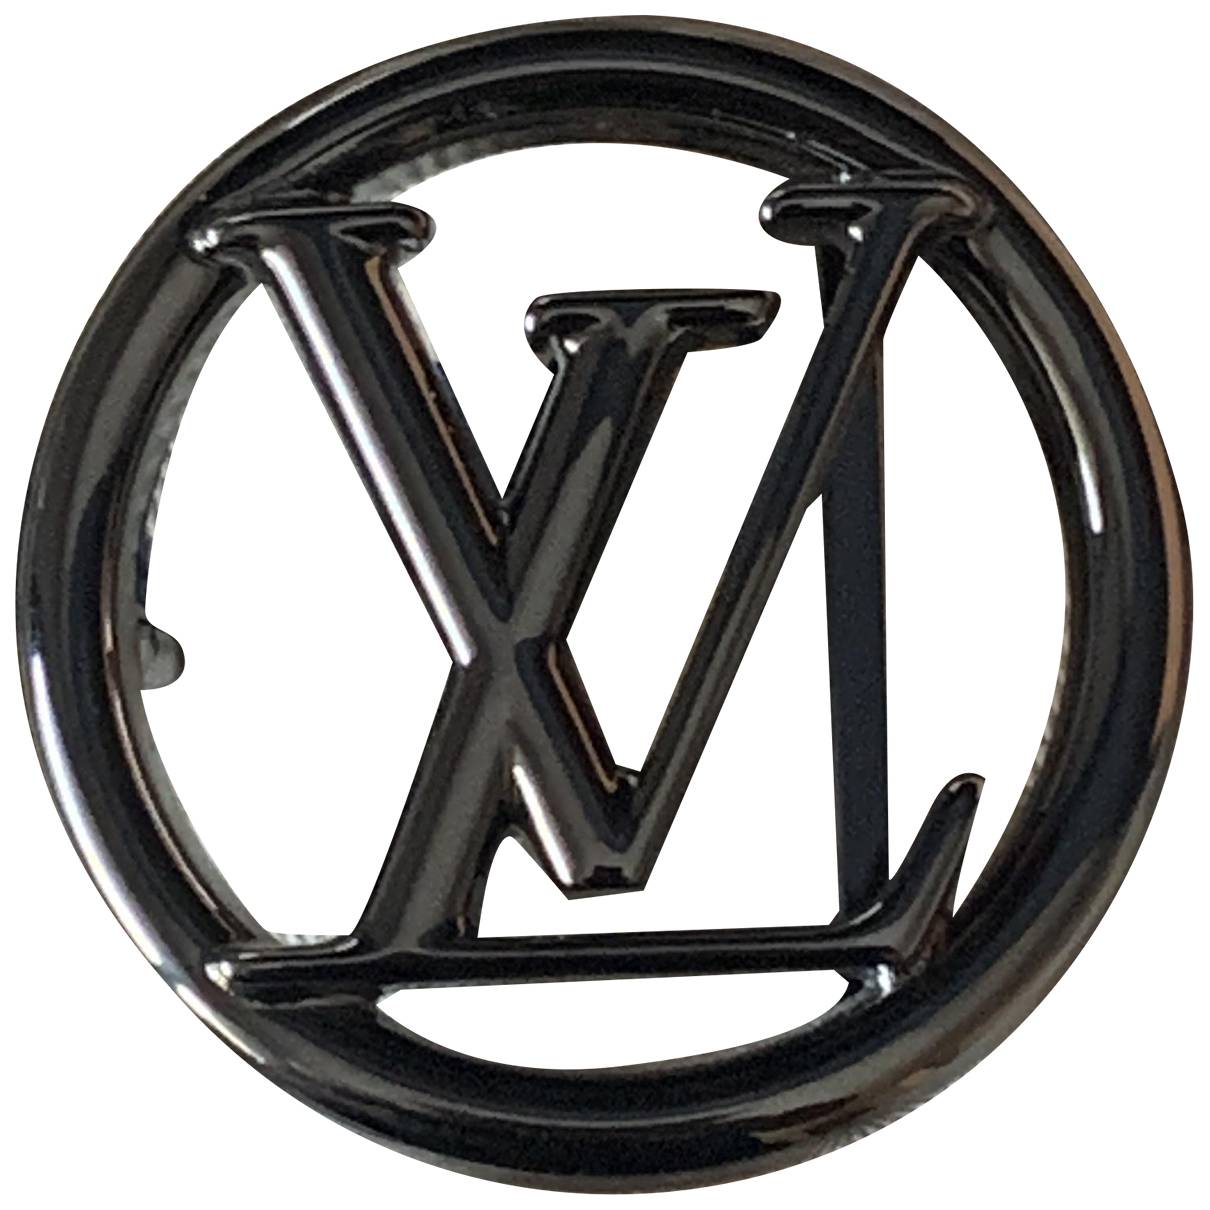 lv emblem metal